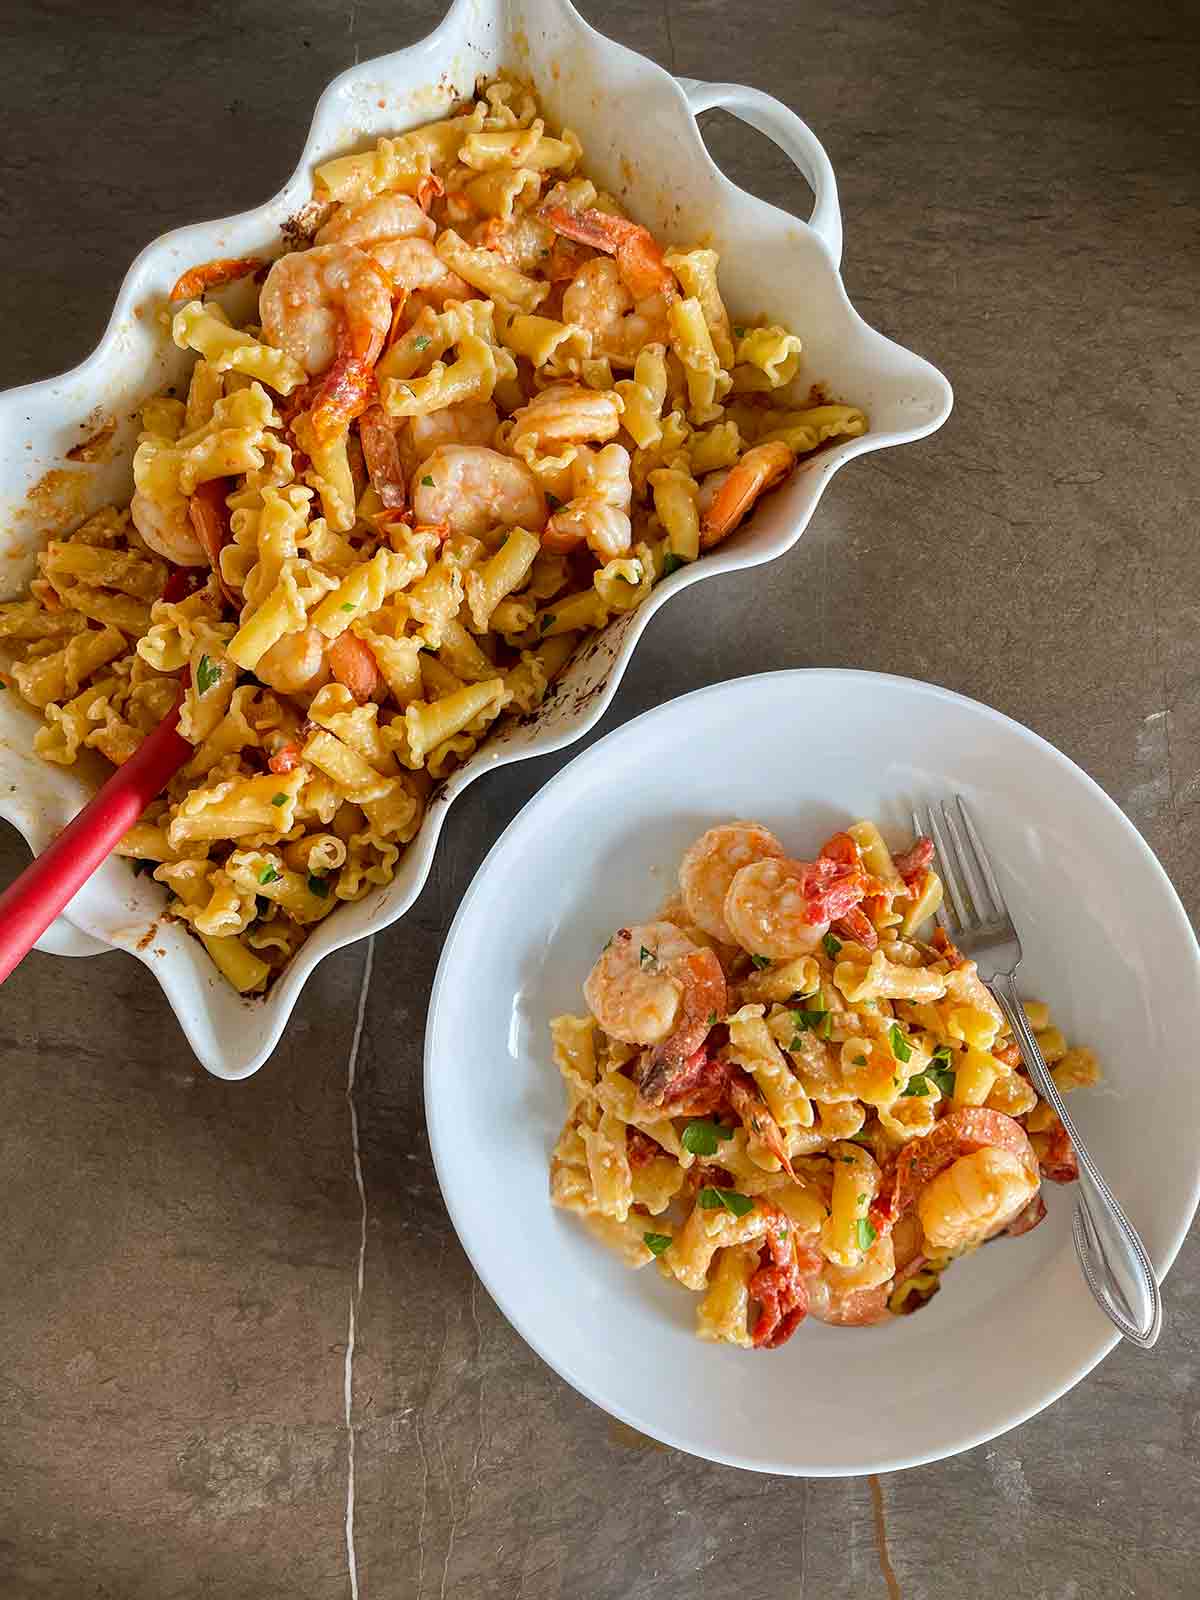 En serveringsfat och skål båda fyllda med bakad pasta med räkor, fetaost och tomater, med en gaffel på sidan.